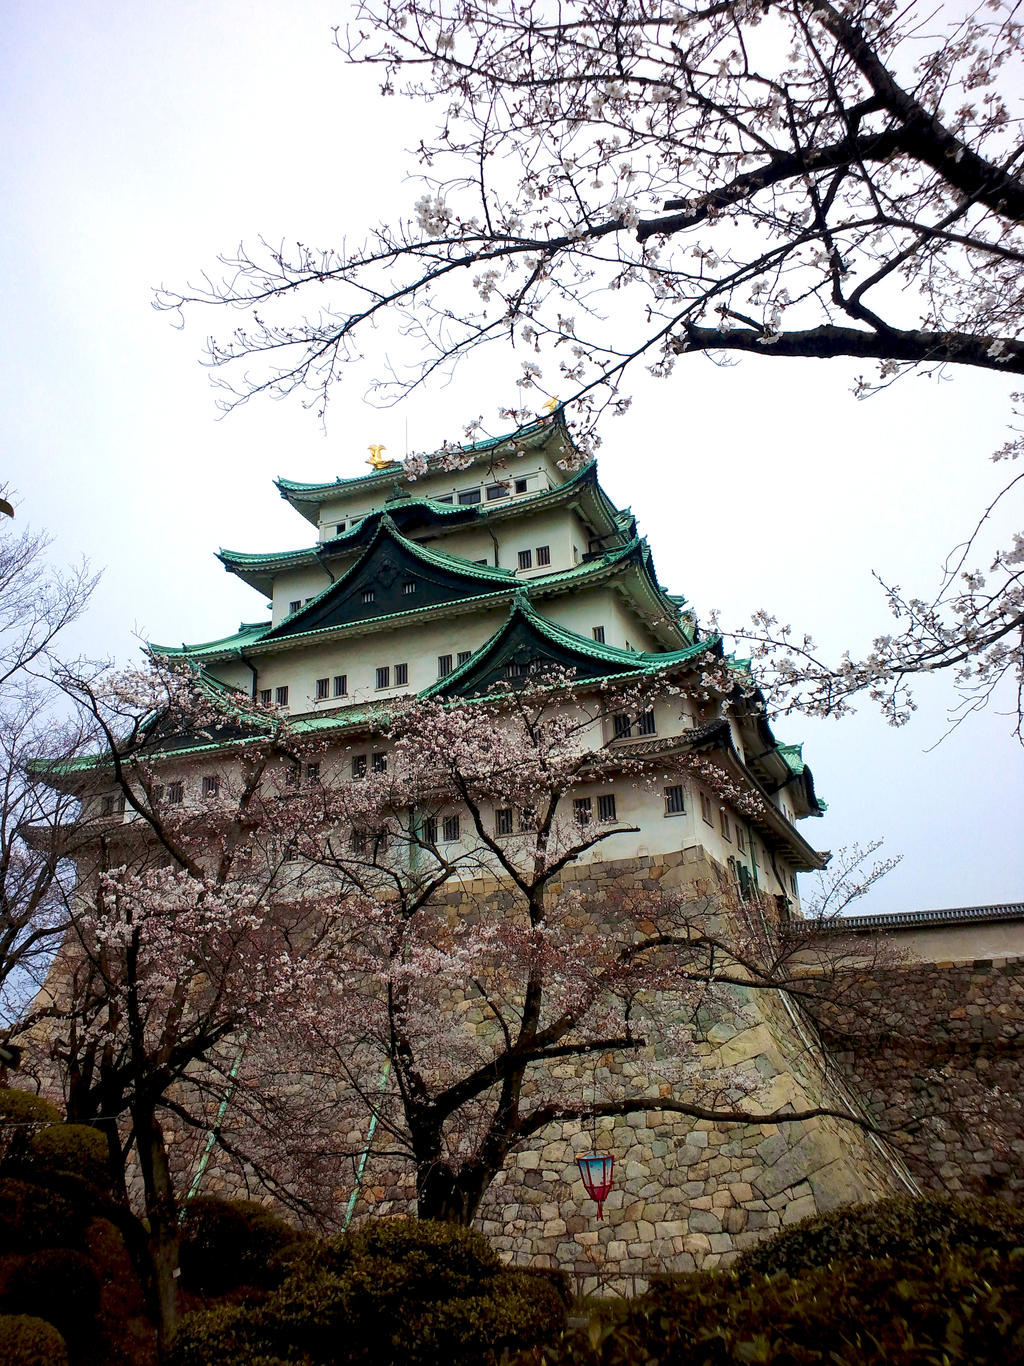 Nagoya's Castle - Japan